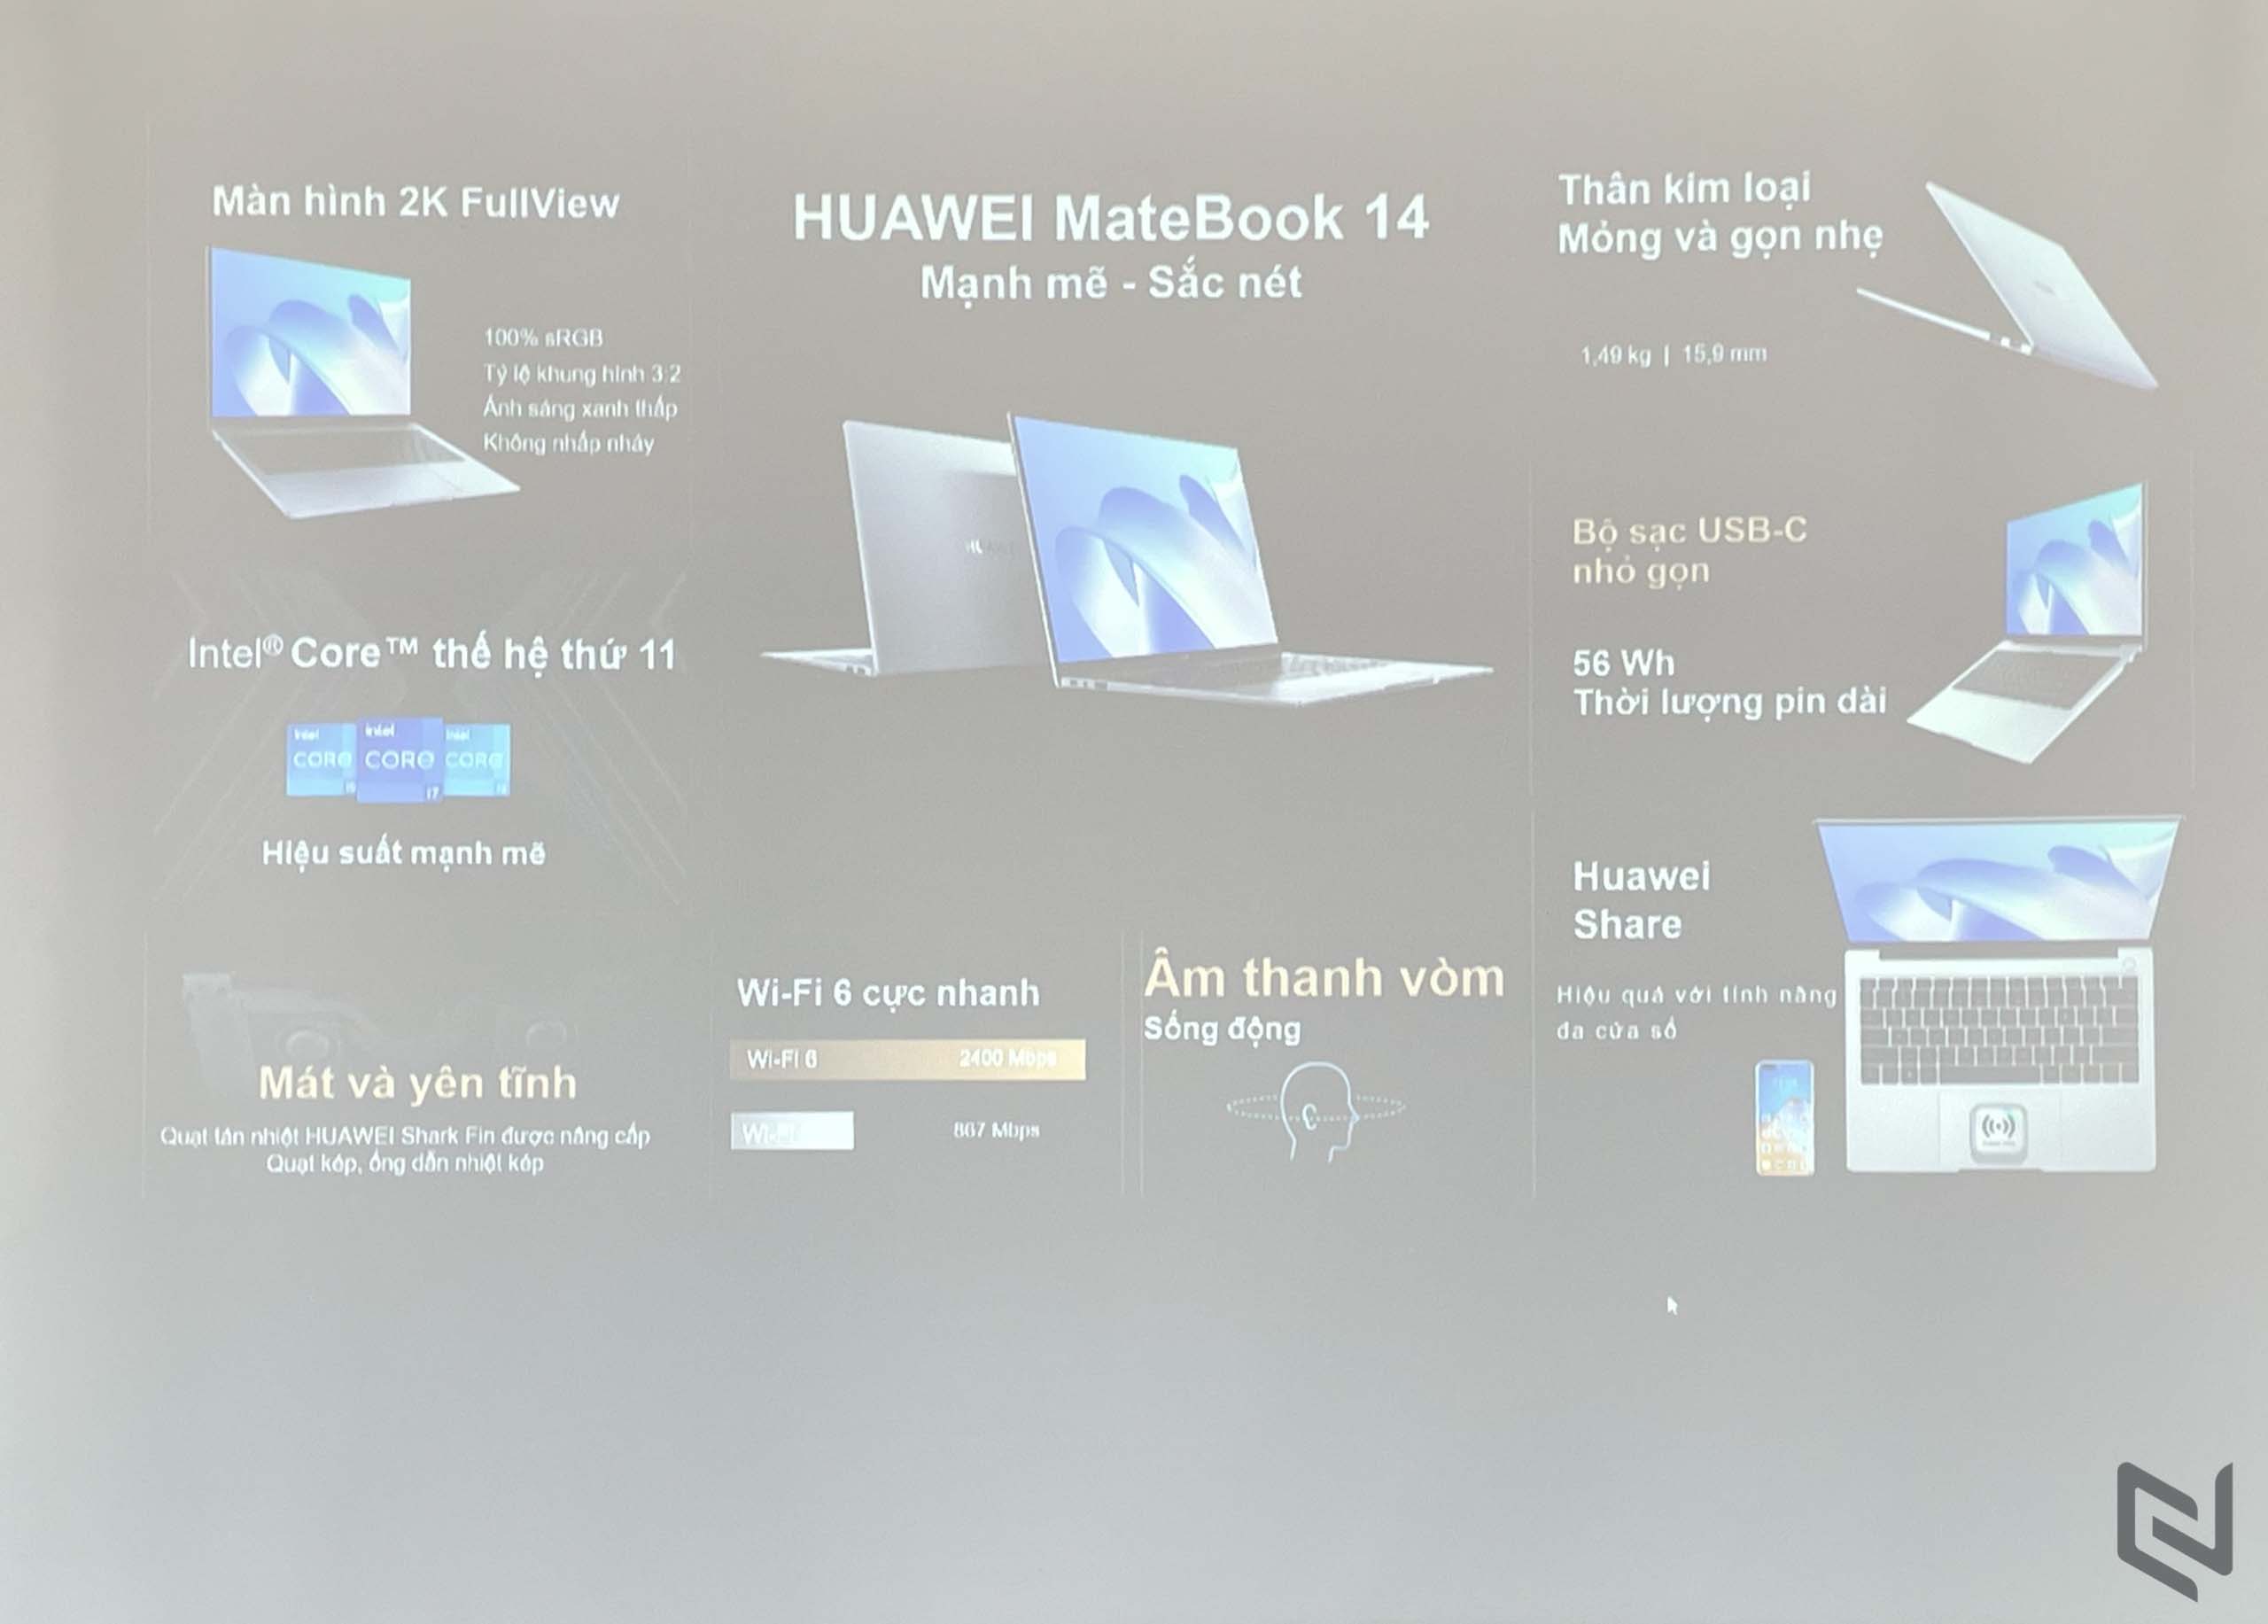 HUAWEI MateBook 14 9 MMOSITE - Thông tin công nghệ, review, thủ thuật PC, gaming